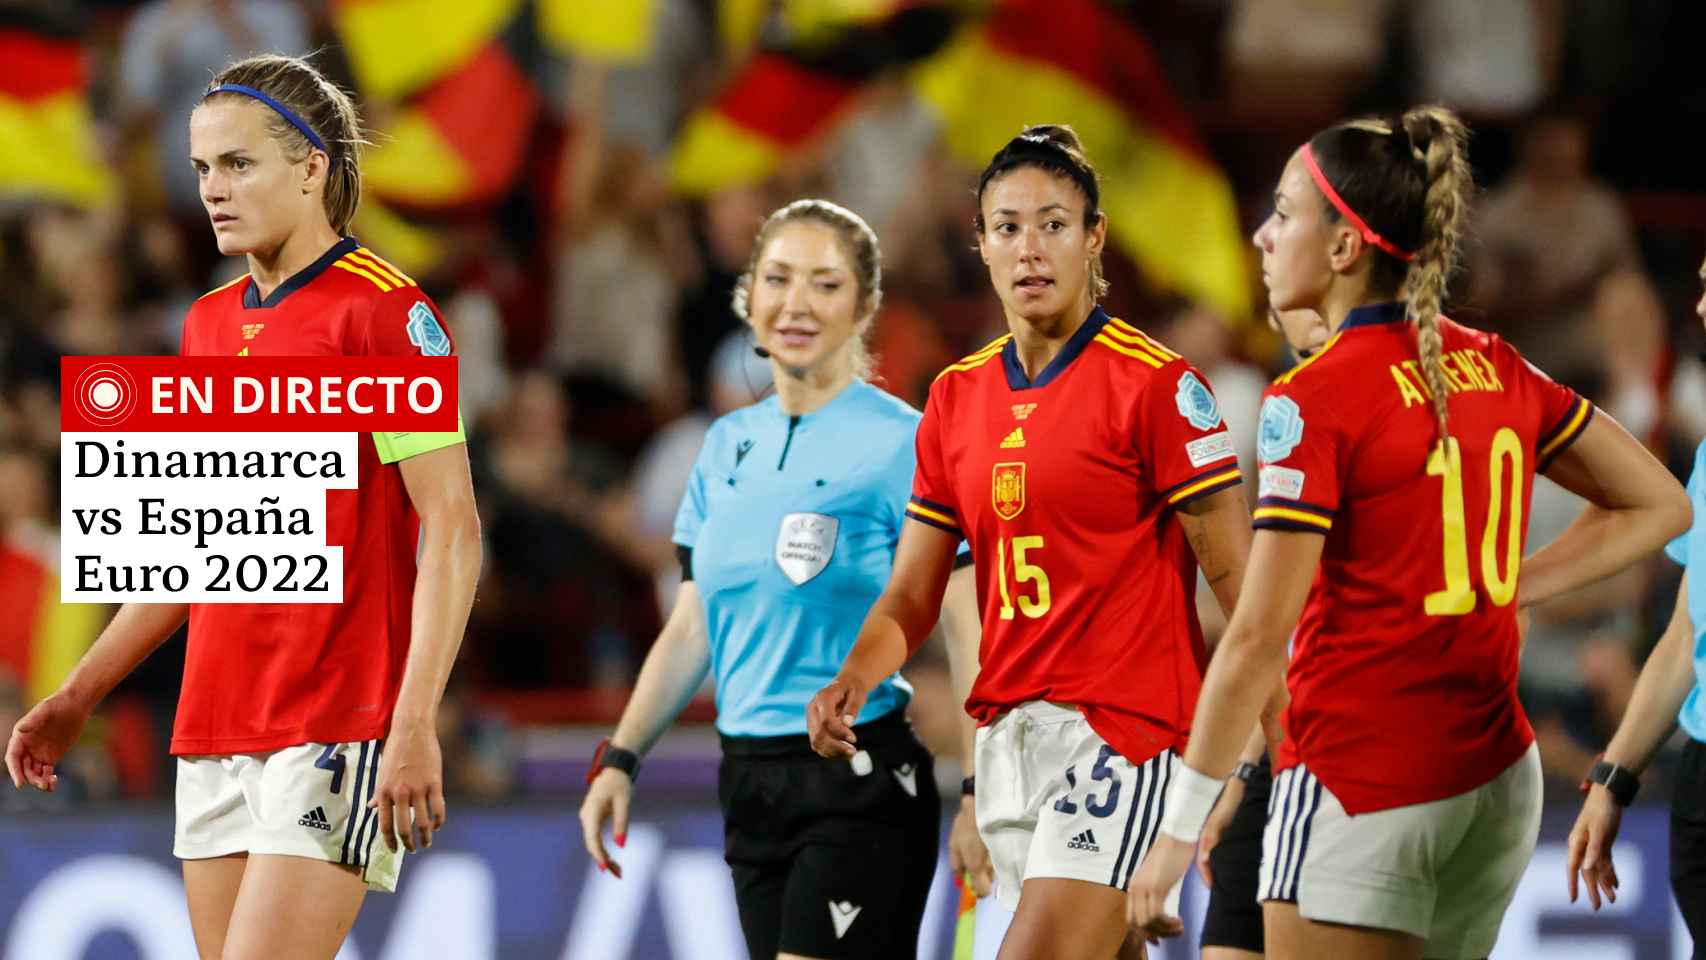 Dinamarca - España, hoy en directo | Eurocopa femenina, partido de fútbol en vivo